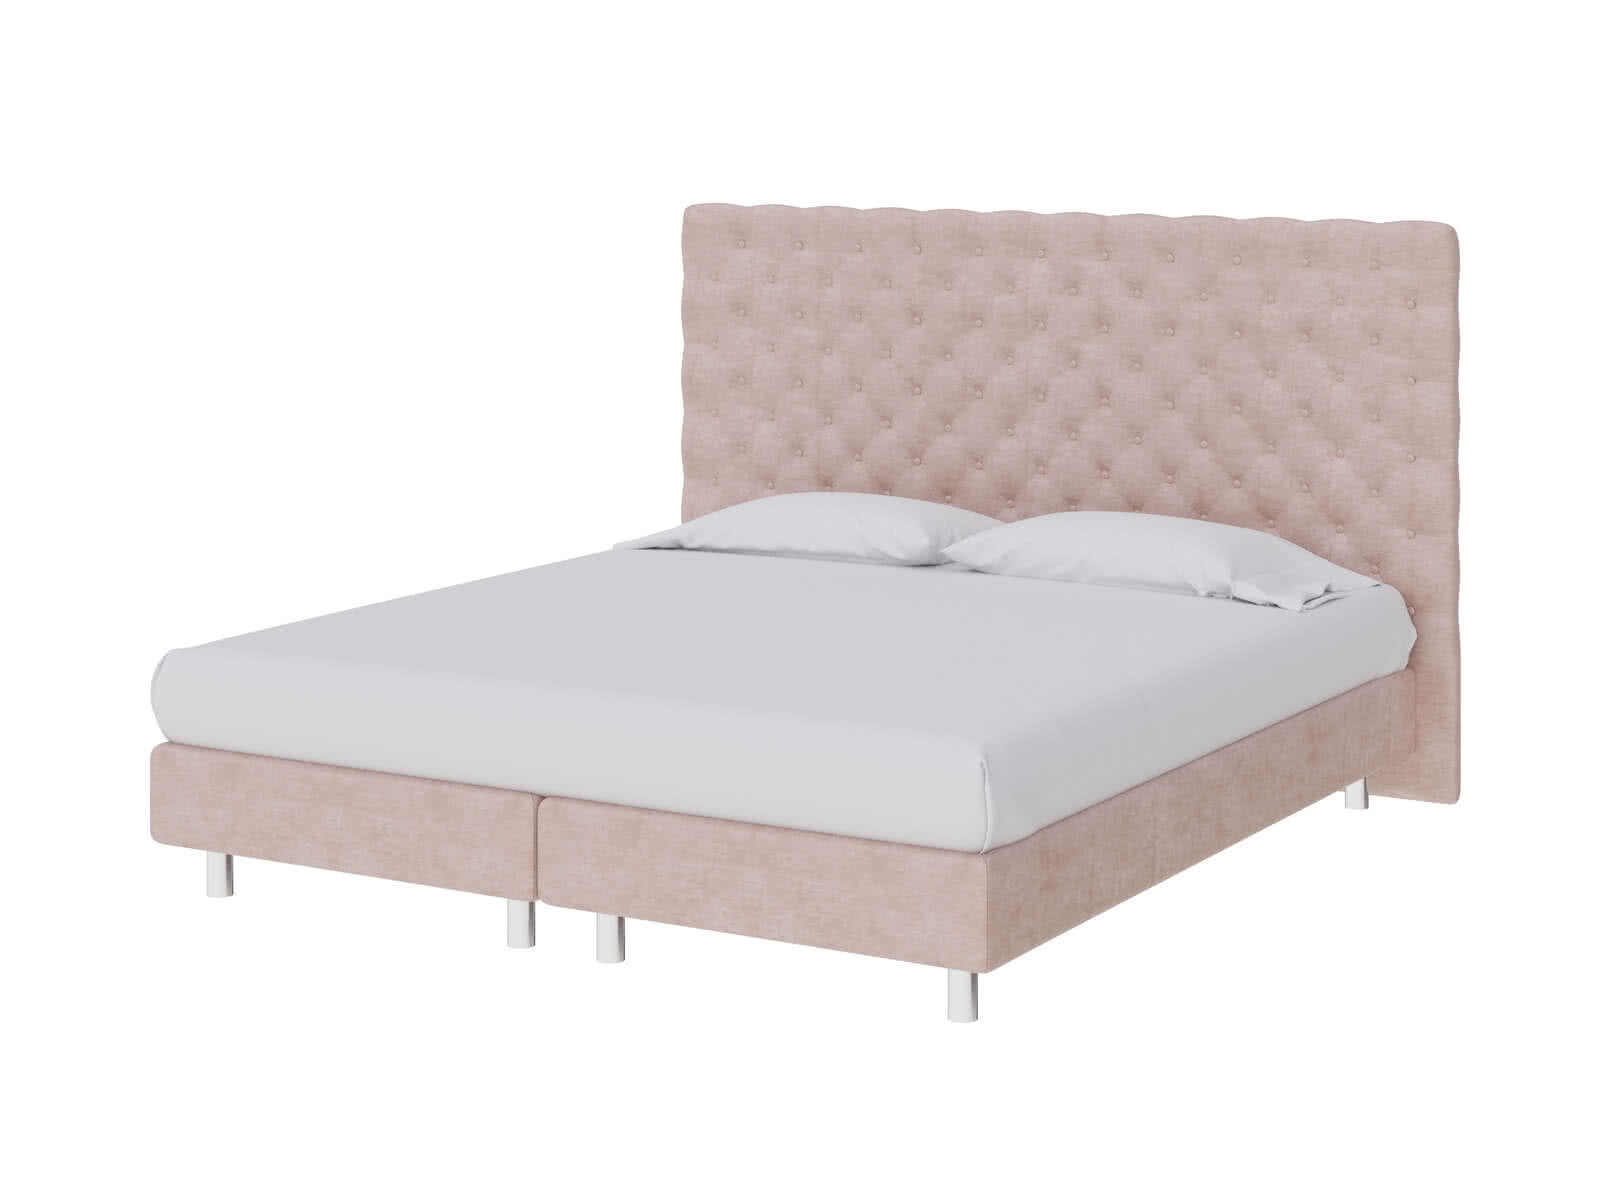 Кровать ProSon Europe Paris Elite 160 х 200 см Лофти Тауп от производителя — цены фабрики, доставка